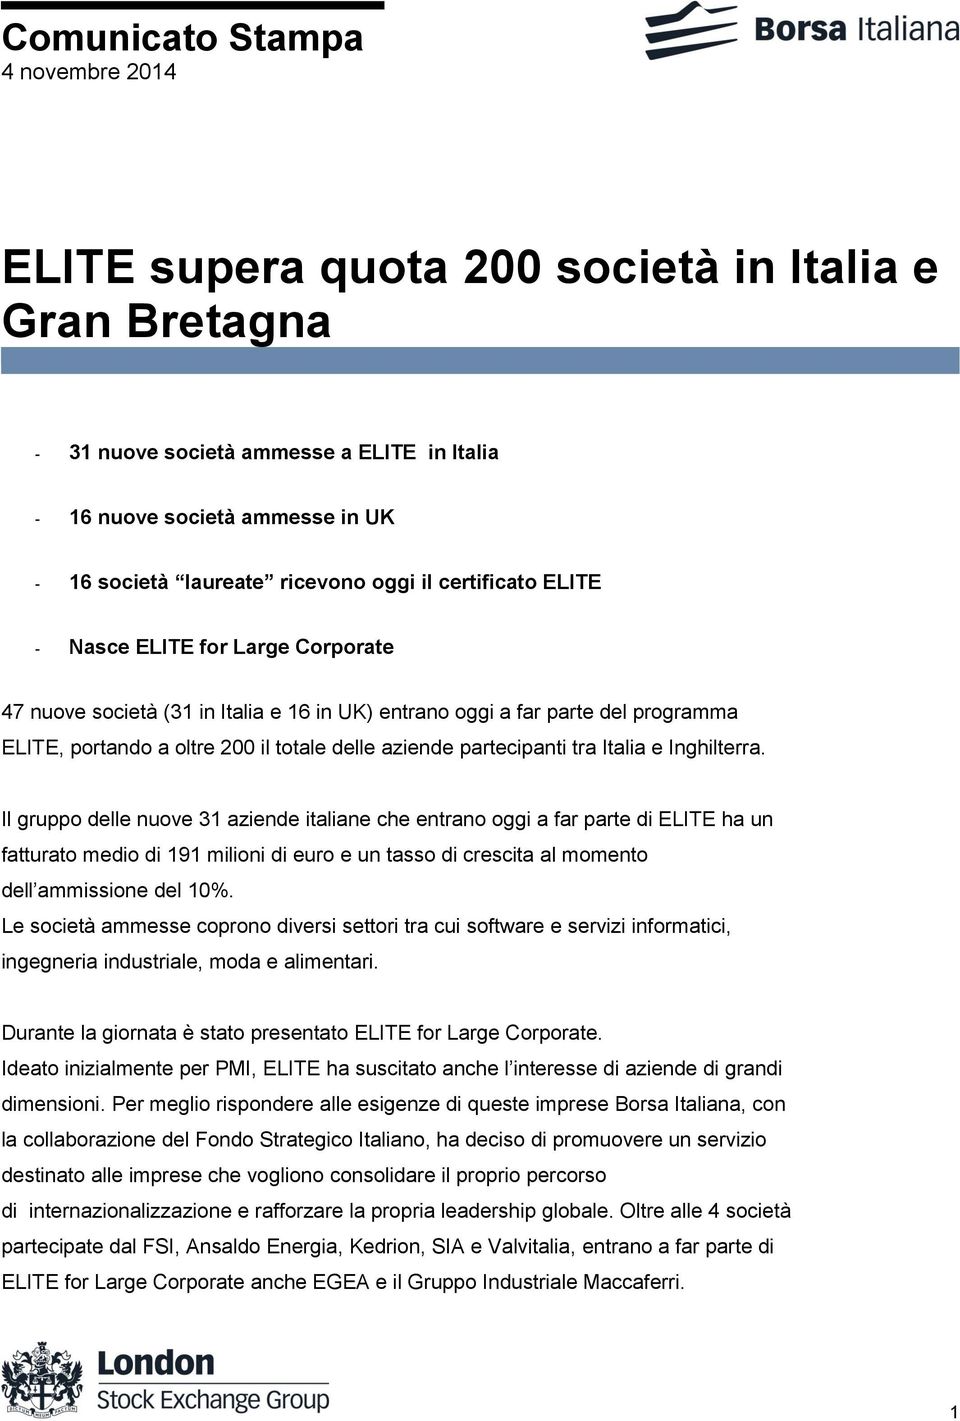 Il gruppo delle nuove 31 aziende italiane che entrano oggi a far parte di ELITE ha un fatturato medio di 191 milioni di euro e un tasso di crescita al momento dell ammissione del 10%.